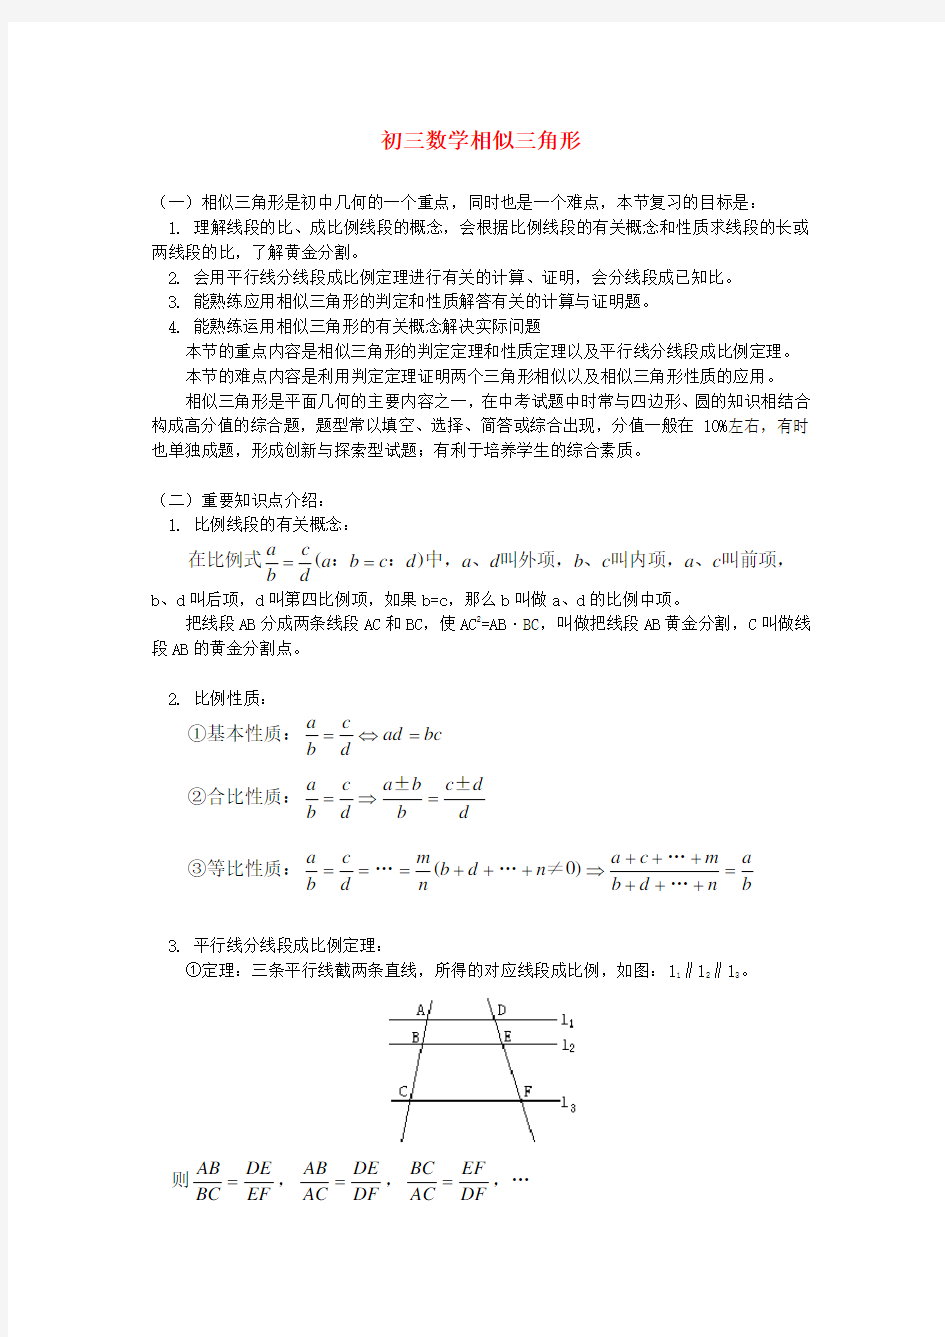 (完整版)初三数学相似三角形典型例题(含答案)